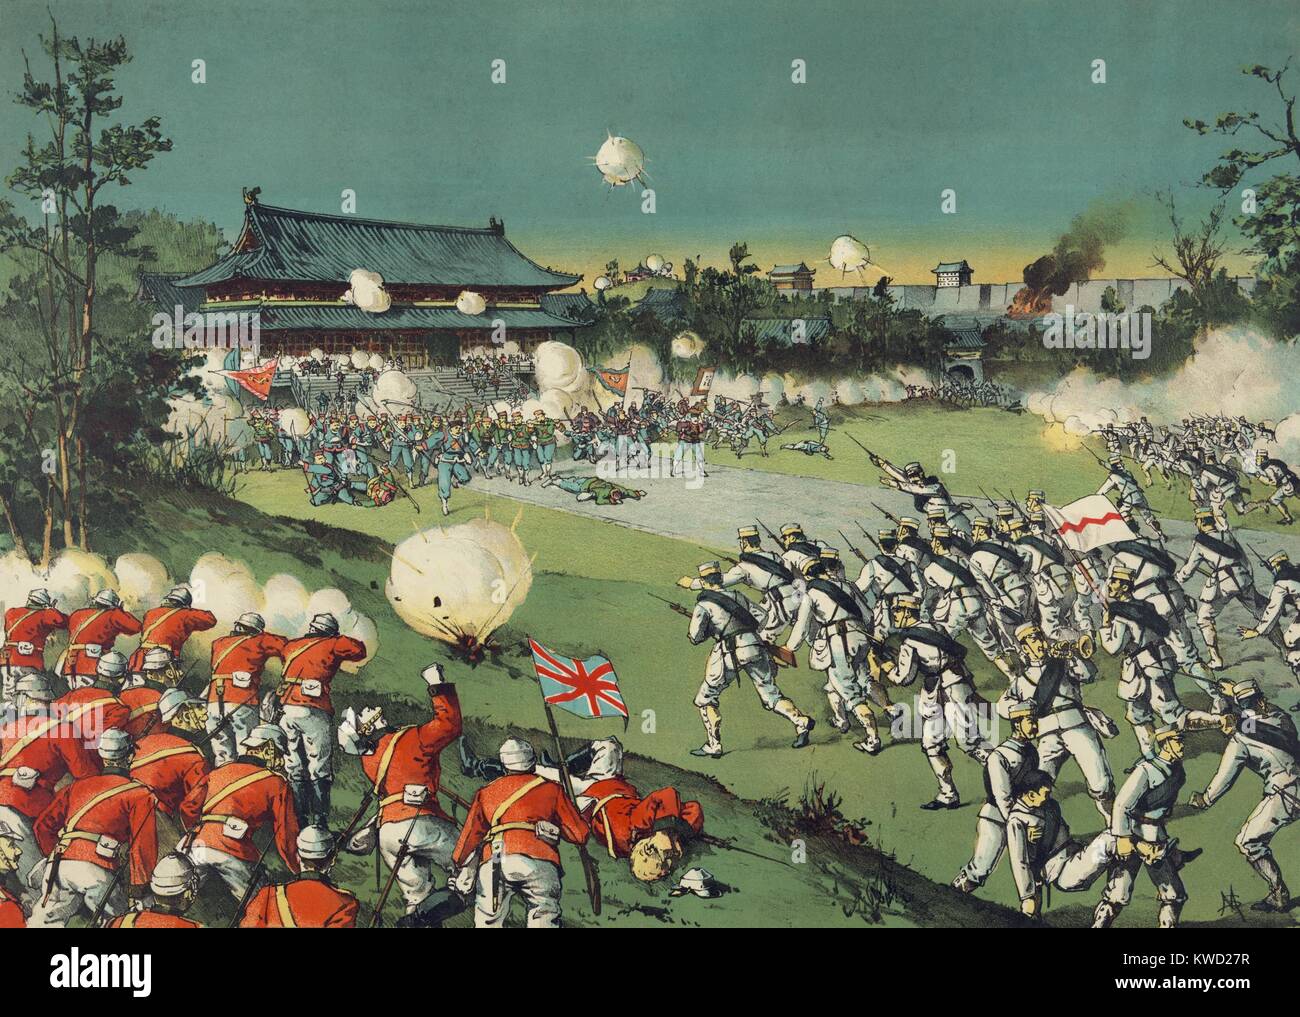 Britische und japanische Soldaten angreifen der Boxer Kräfte an der Kaiserburg, August 1900. Sie kämpften in der Verbotenen Stadt, die Schlossanlage im Zentrum von Peking, China, während der Boxeraufstand (BSLOC 2017 20 30) Stockfoto